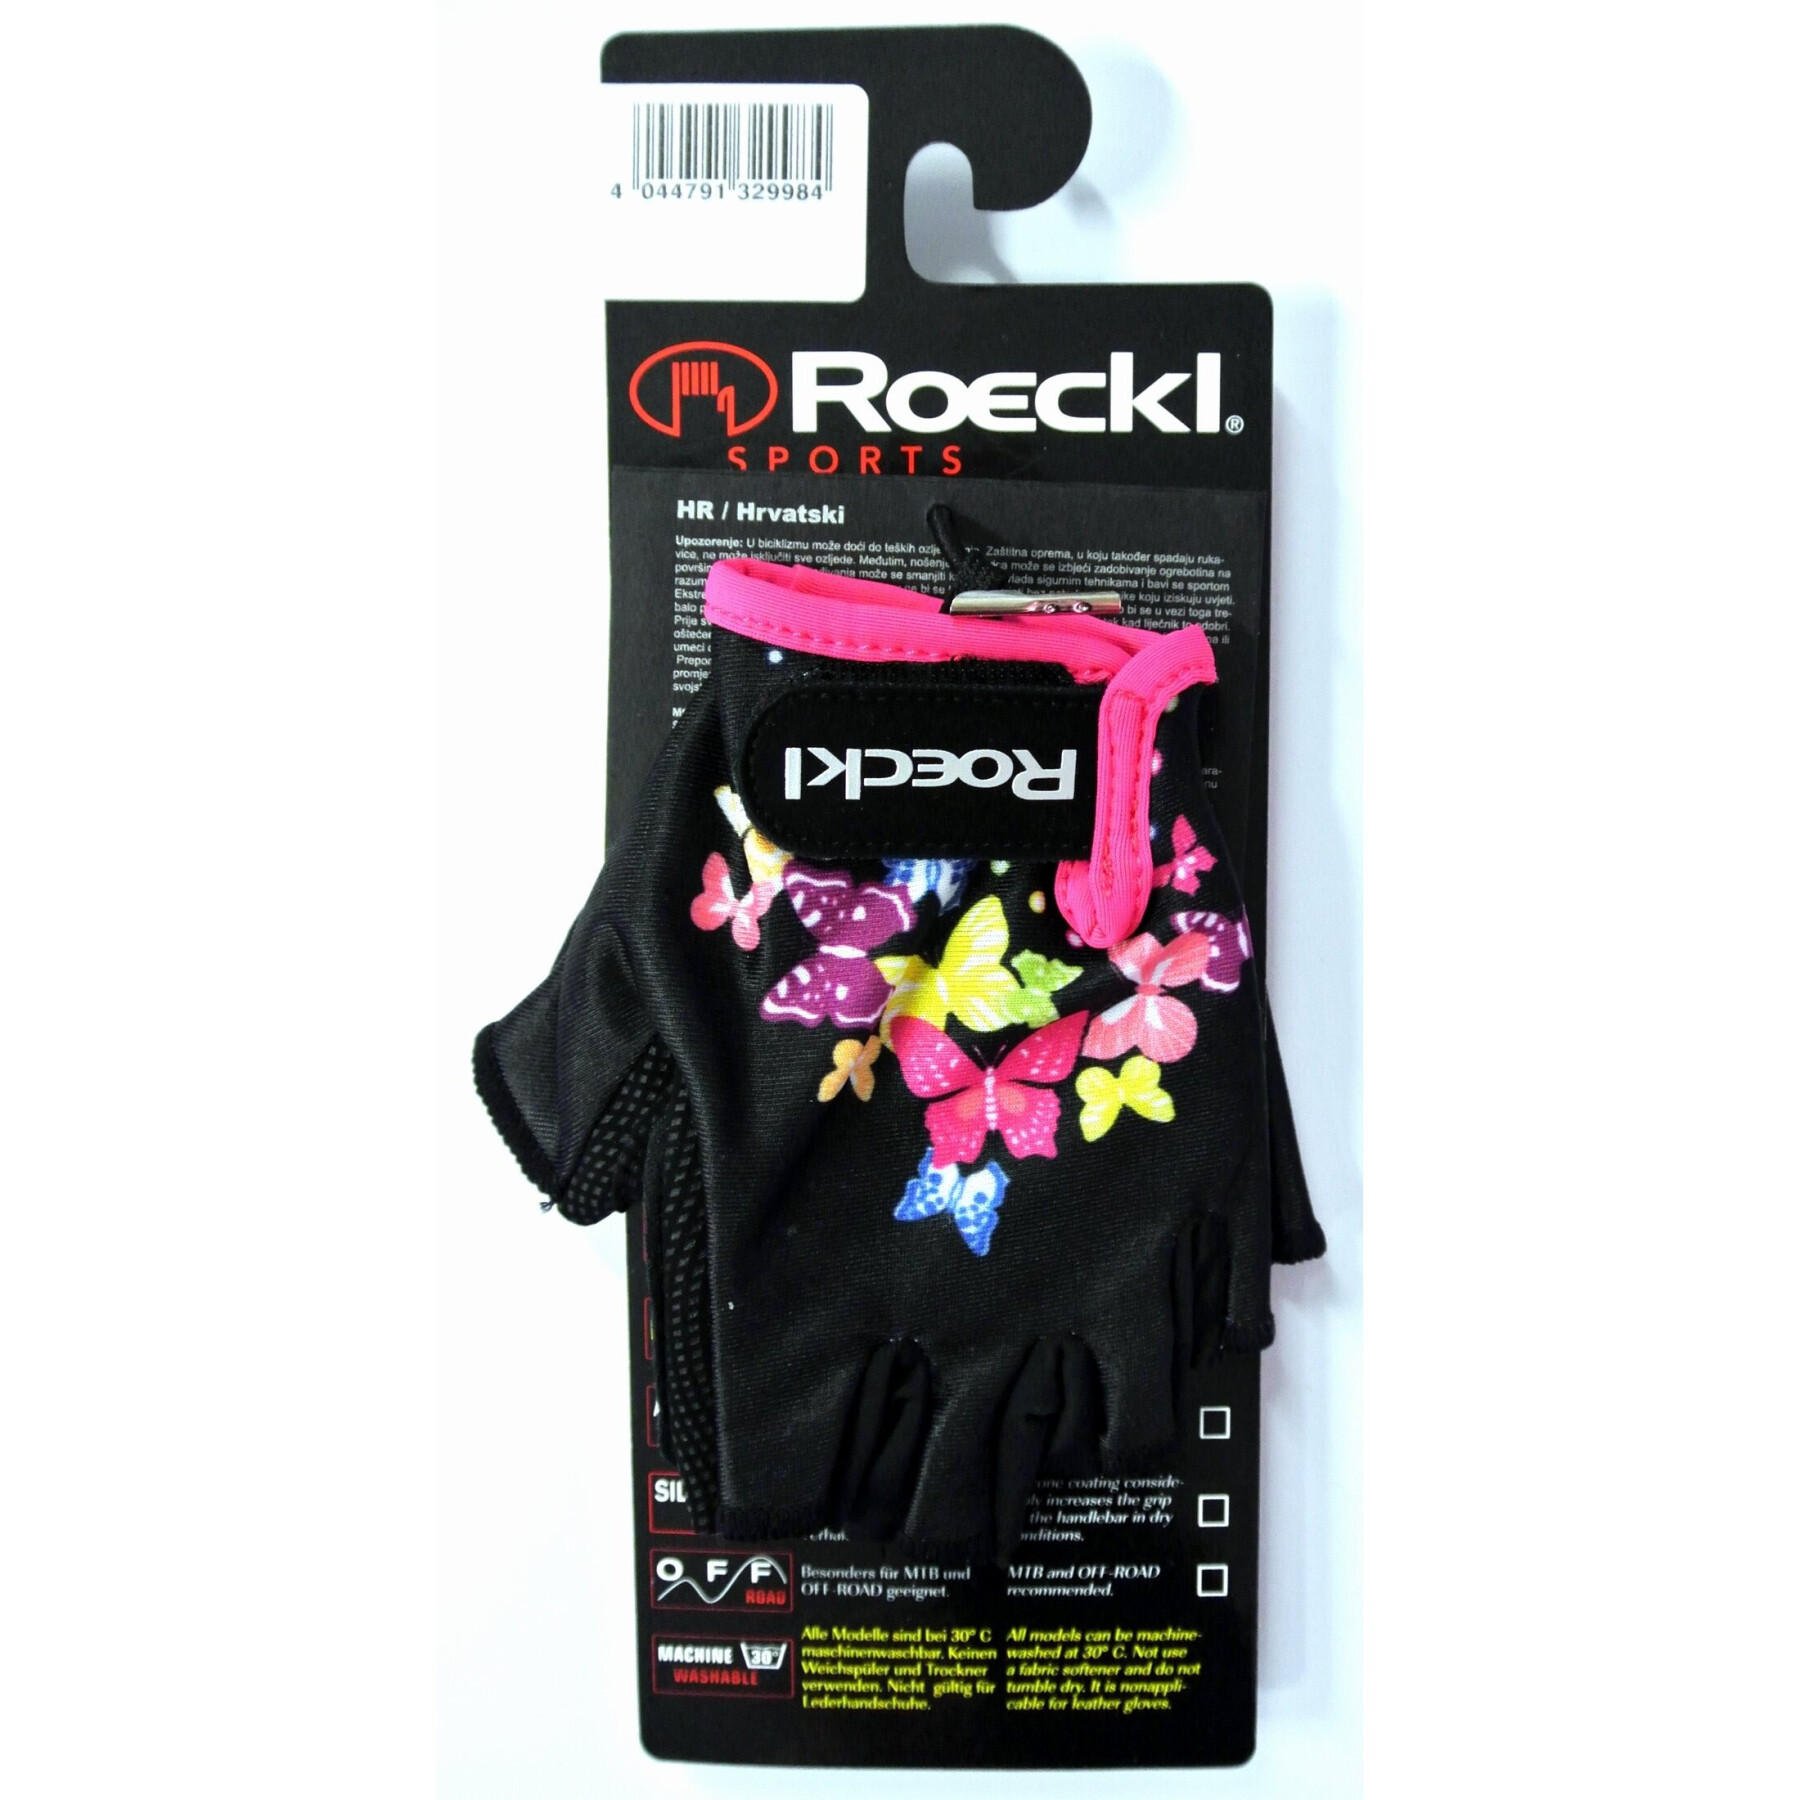 Children's gloves Roeckl Tamara